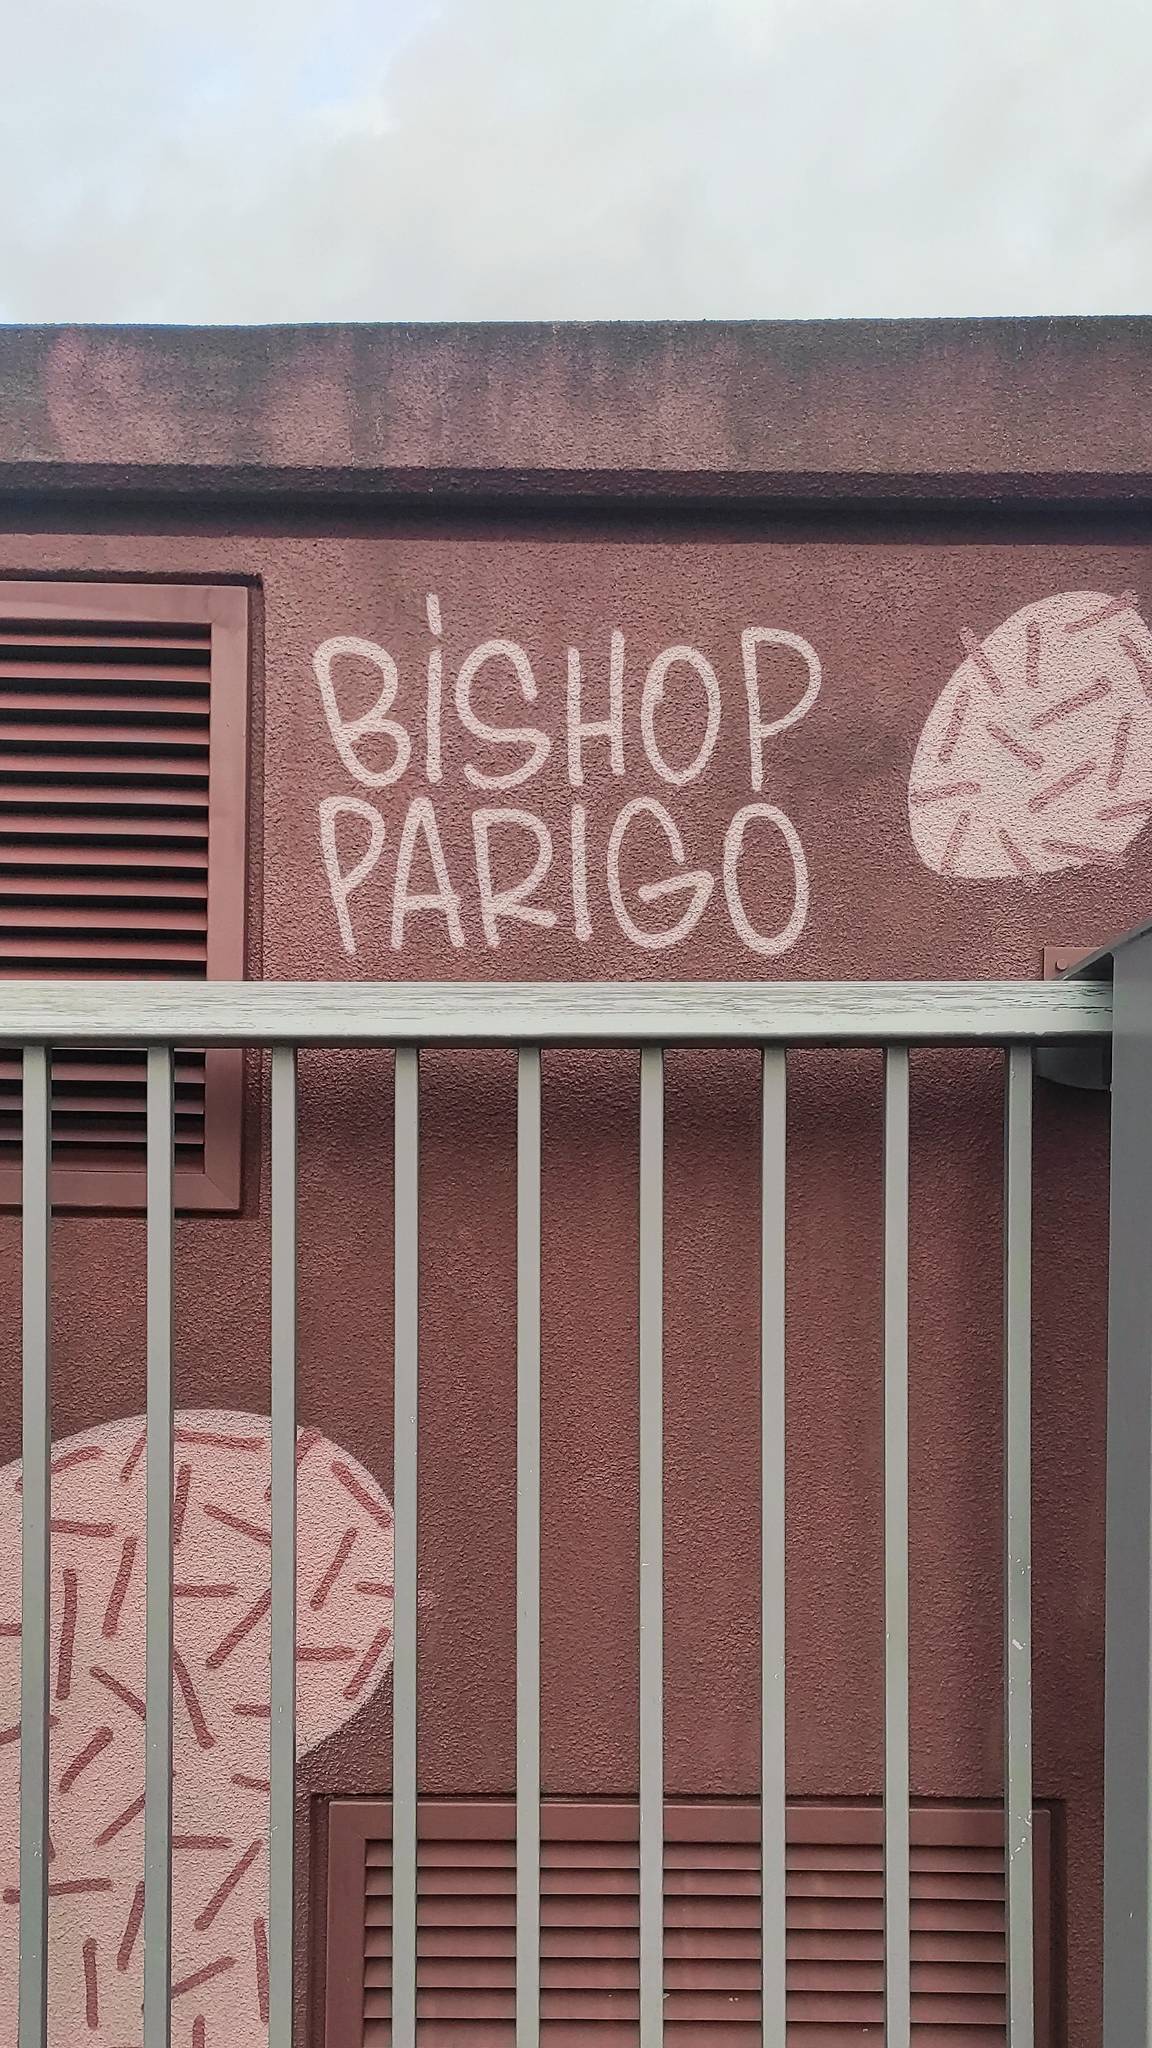 Bishop Parigo&mdash;undefined